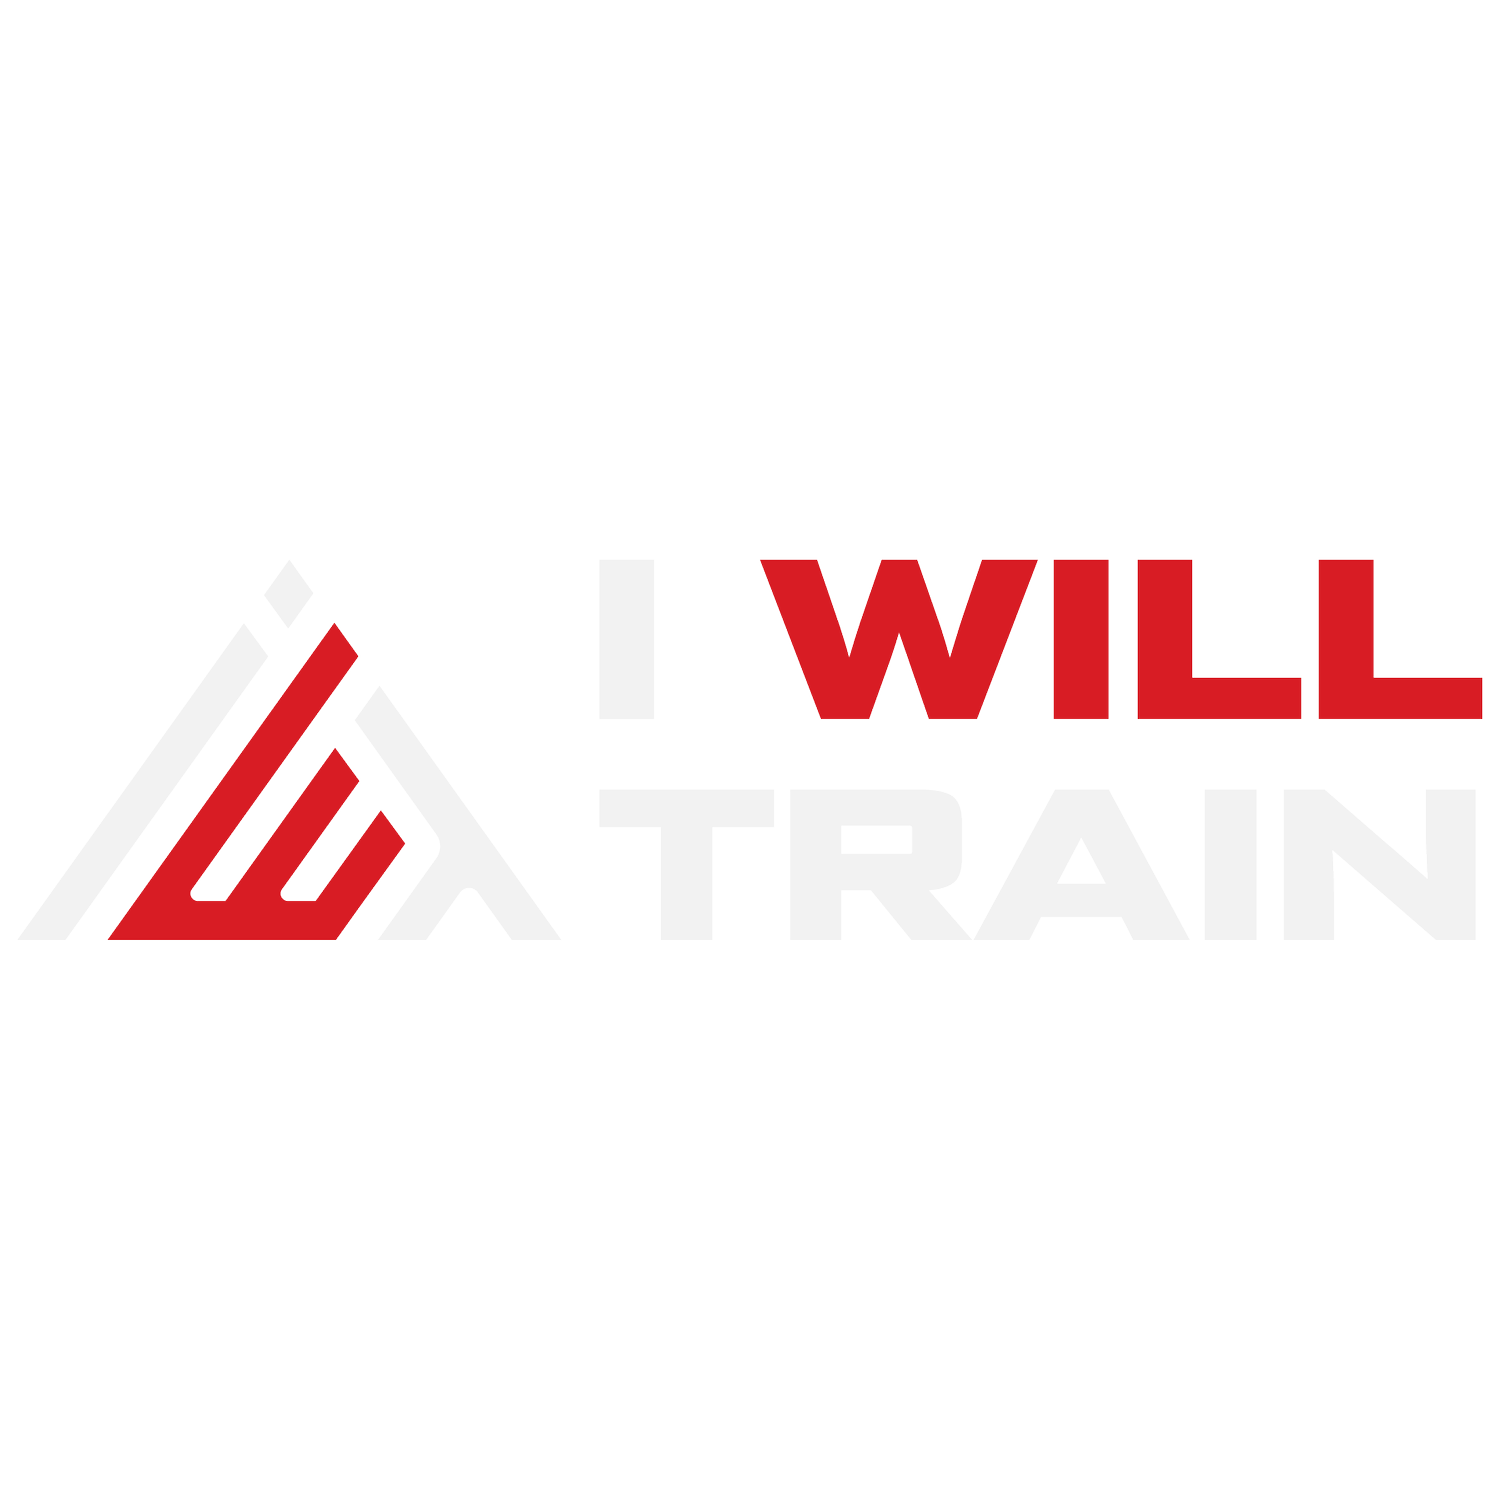 I Will Train